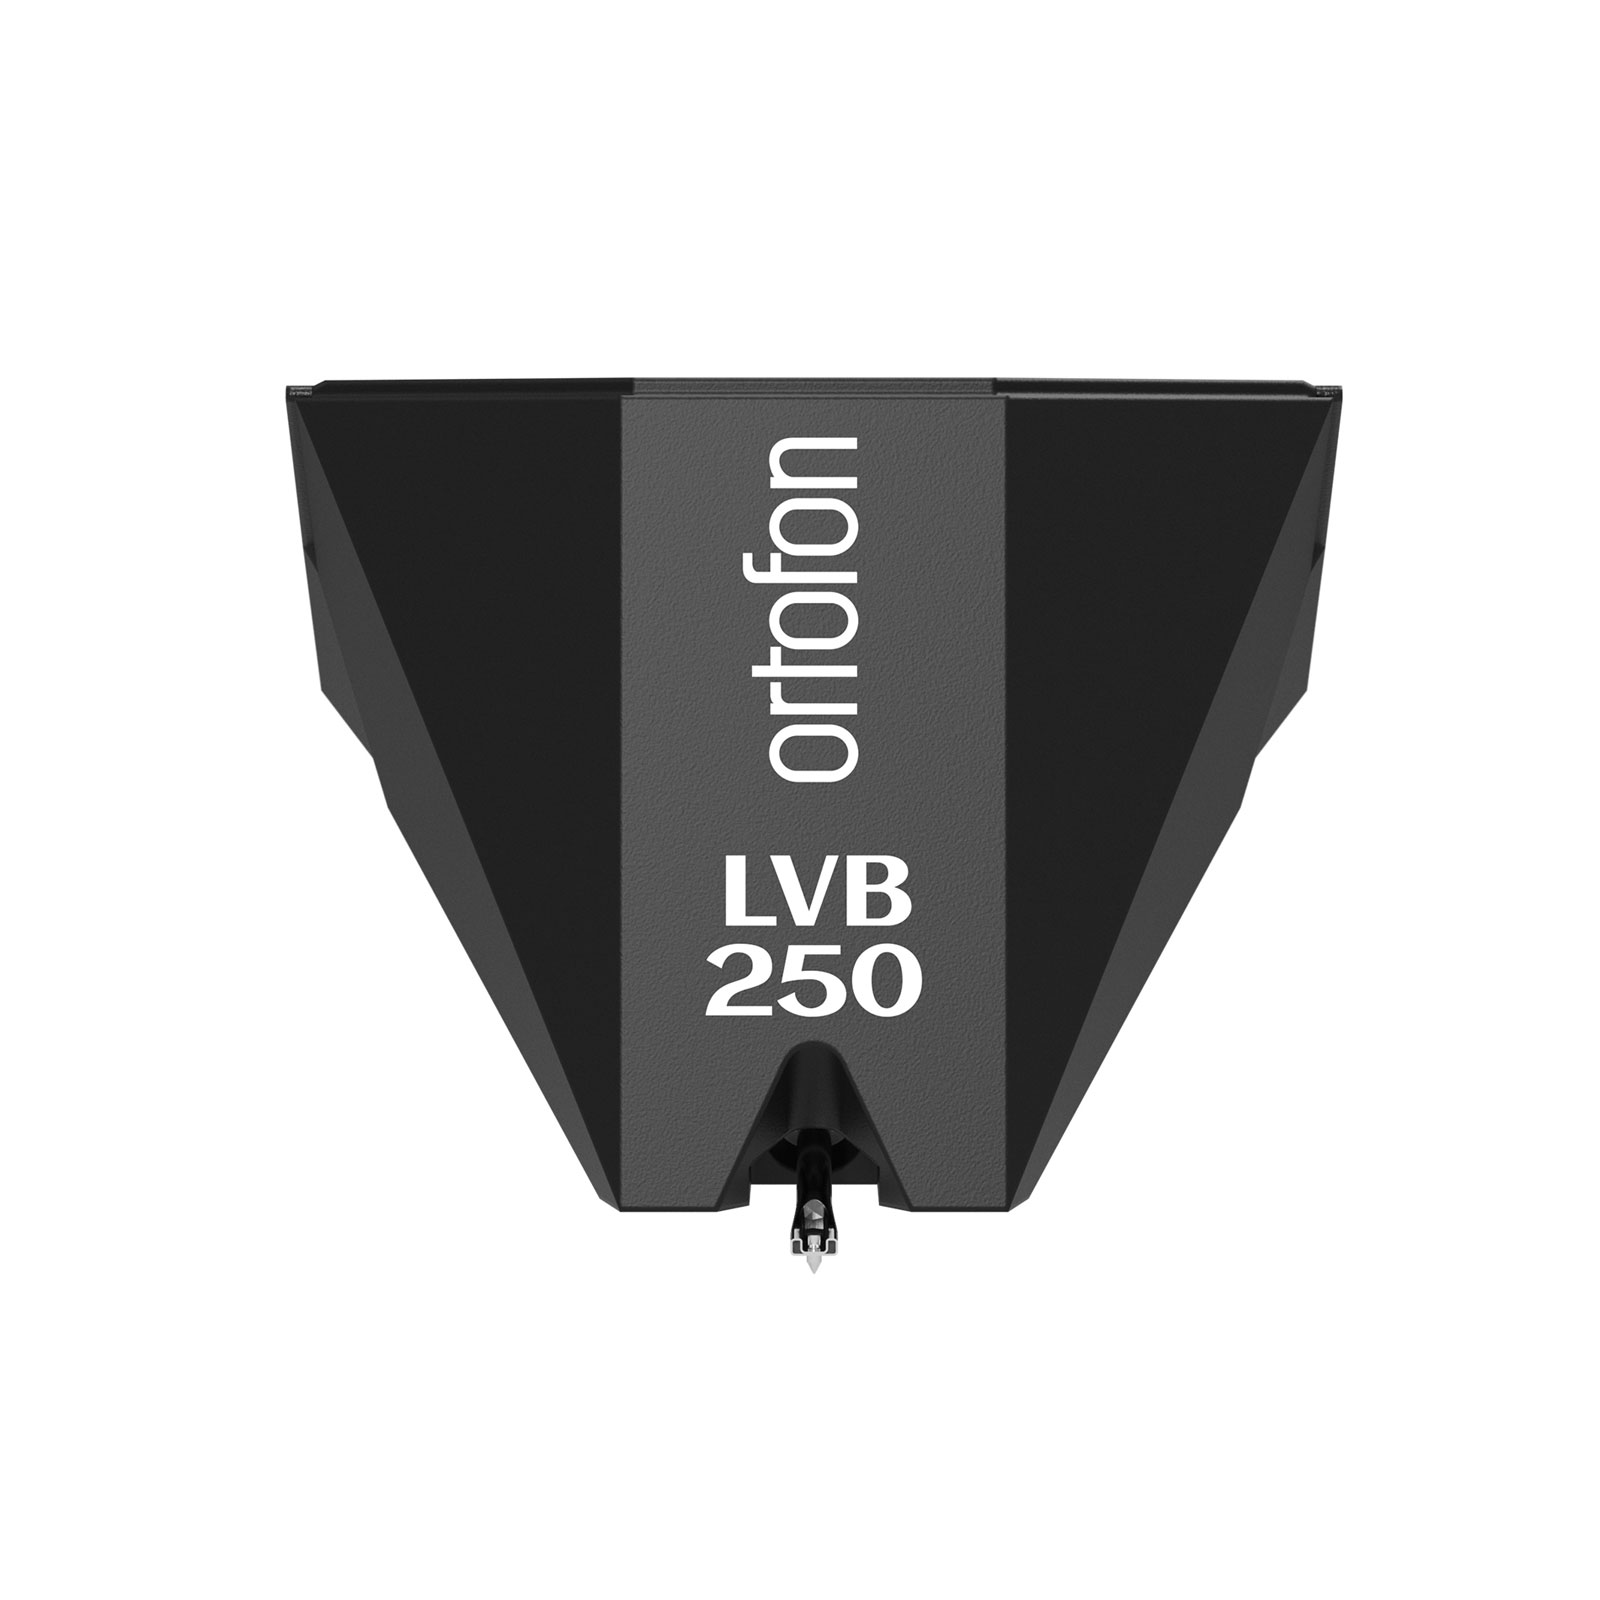 ORTOFON HIFI 2MR BLACK LVB 250